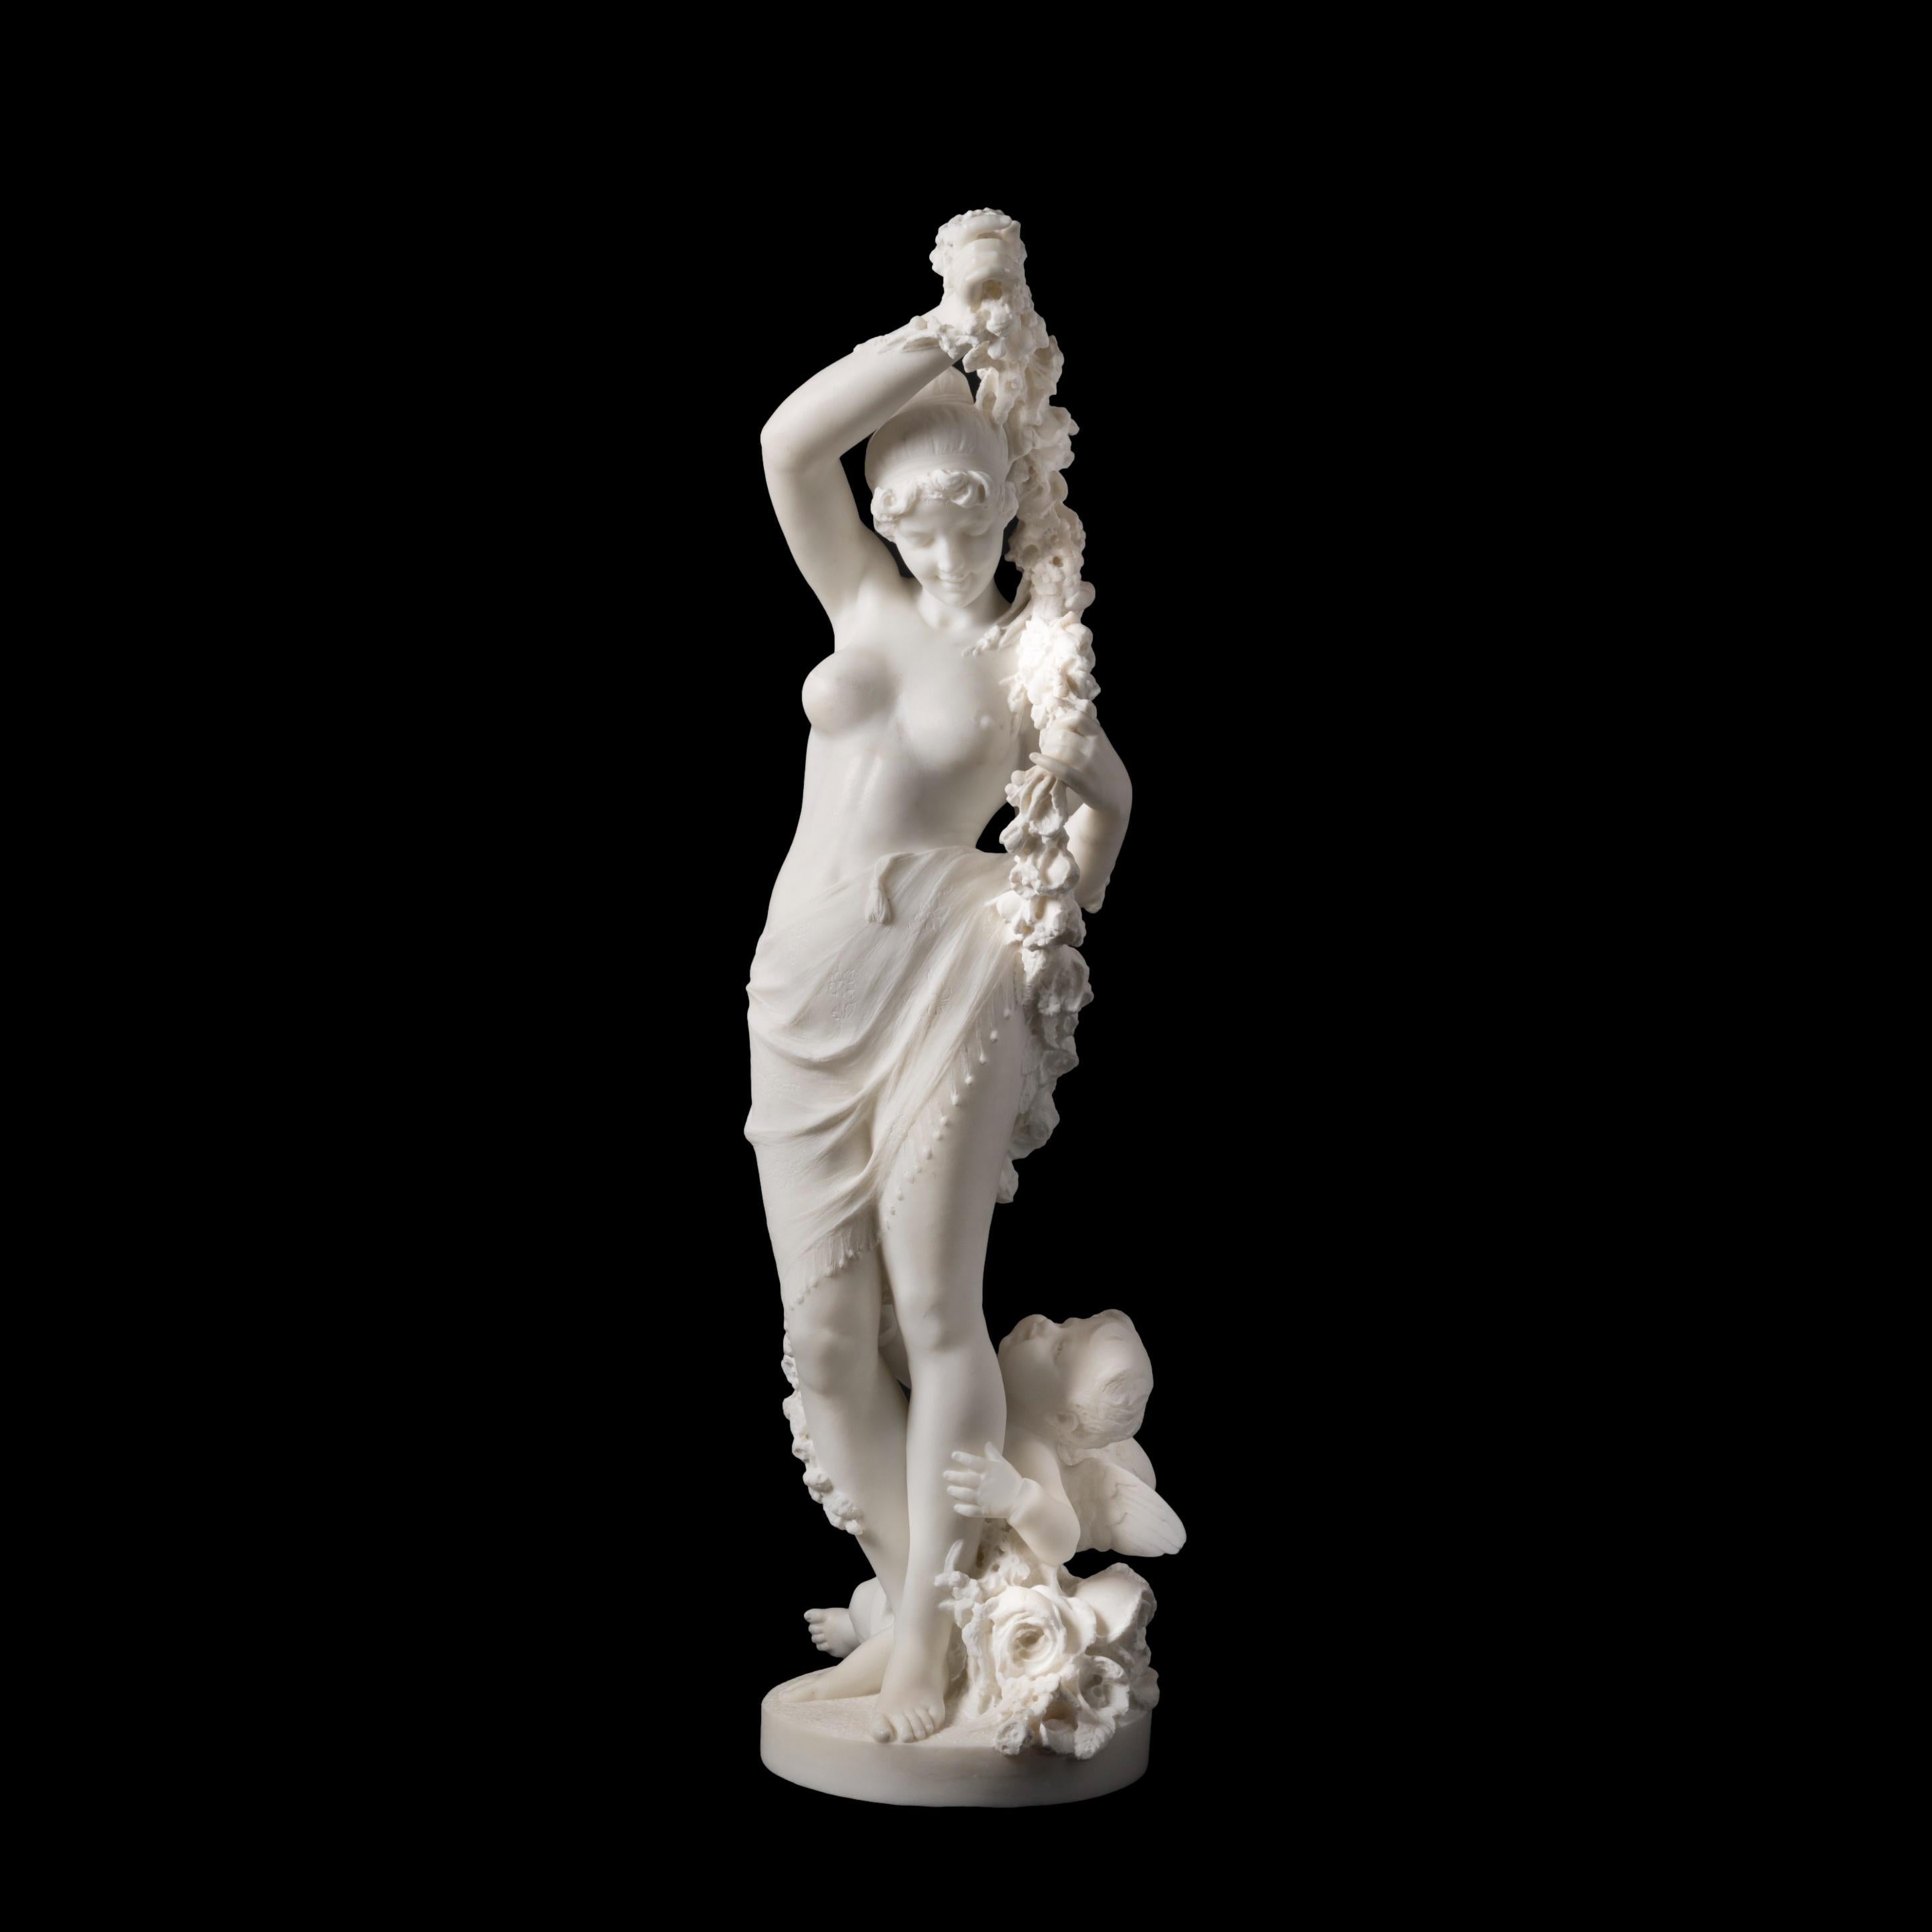 Allégorie du printemps

Sculptée dans du marbre statuaire, la figure féminine pose dans un doux contrapposto, une jupe fluide autour de la taille, tandis qu'elle tient une guirlande de fleurs au-dessus de sa tête, avec un Cupidon assis à ses pieds,